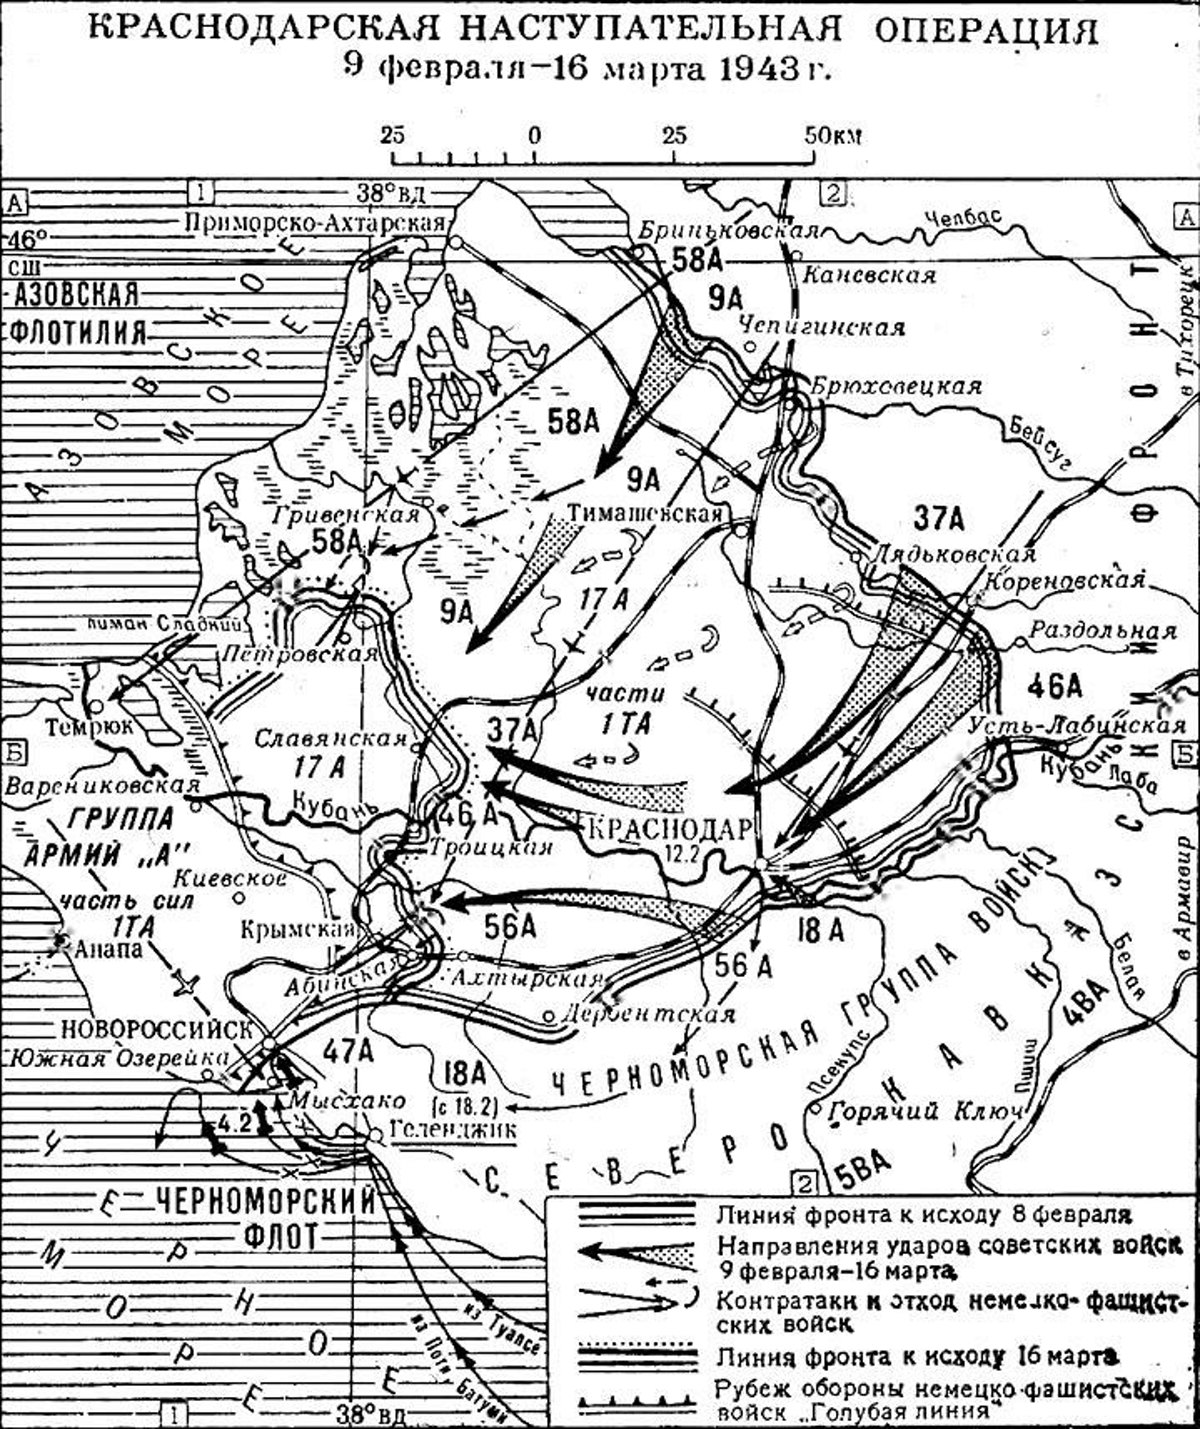 Карта краснодарской наступательной операции с указанием направлений ударов советских войск 